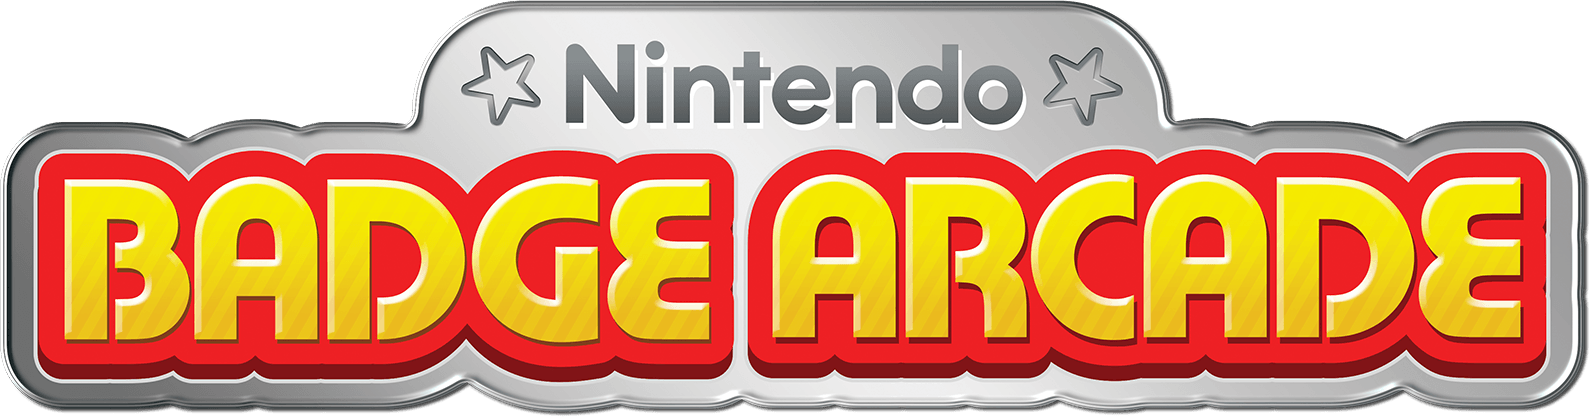 Nintendo 3DS Logo - Nintendo Badge Arcade for Nintendo 3DS - Official Site